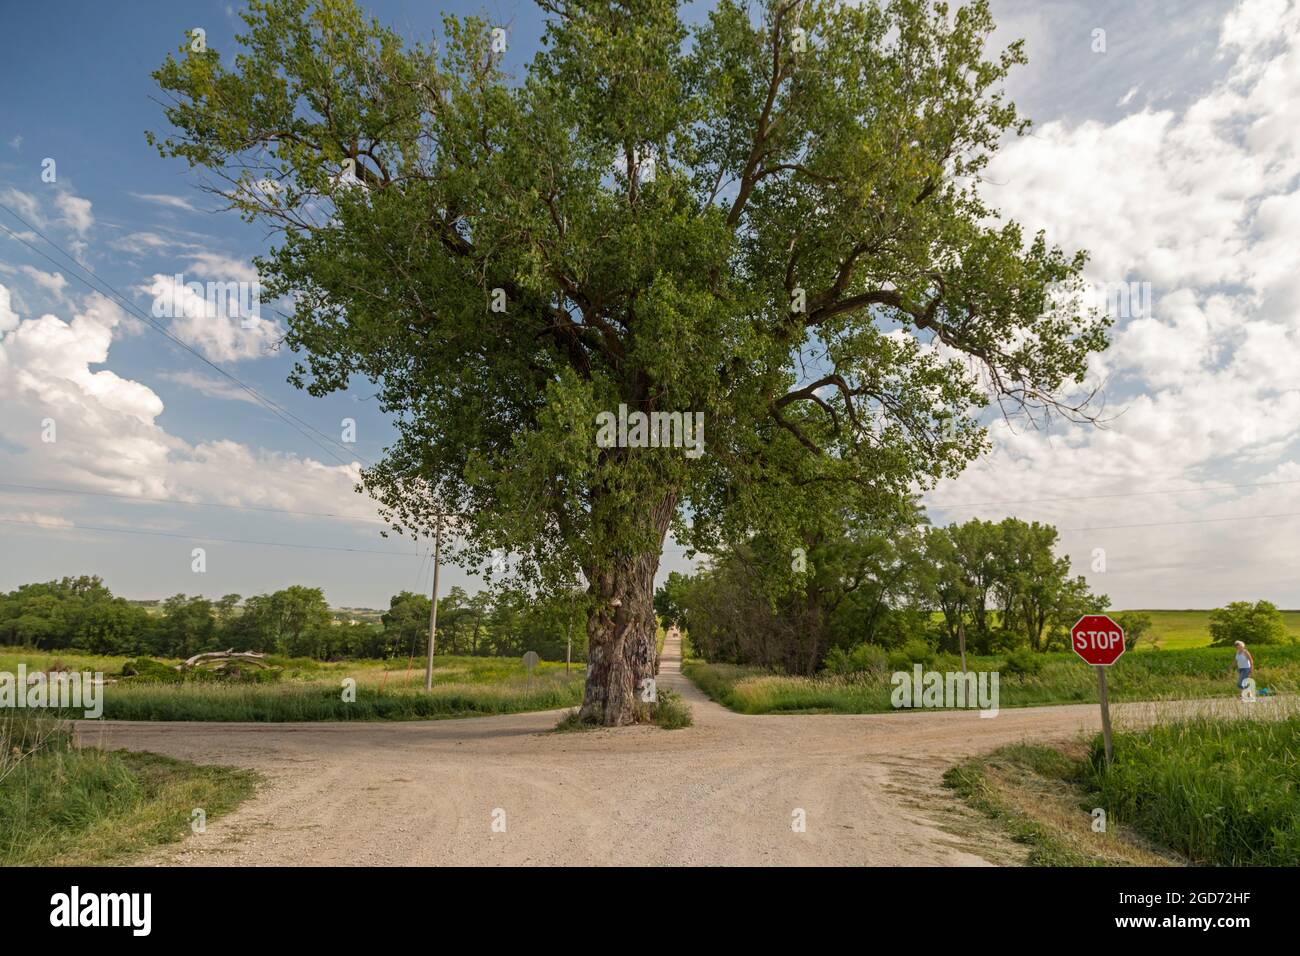 Brayton, Iowa - Baum in der Straße. Ein großer Baumwollwald, der inmitten einer Kreuzung von zwei ländlichen Schotterstraßen wächst. Stockfoto